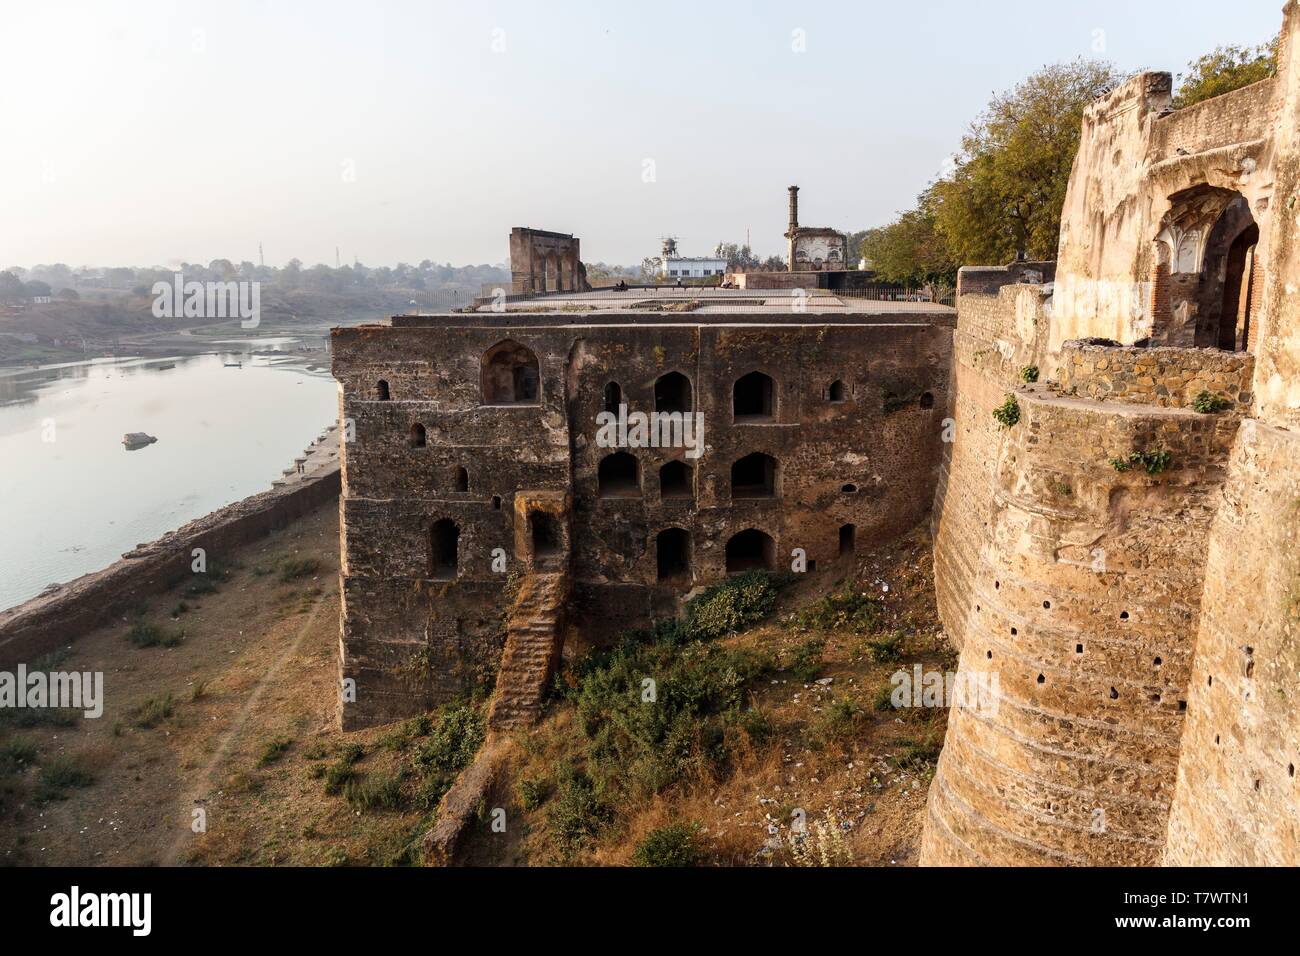 L'Inde, le Madhya Pradesh, Burhanpur, Shahi Qila fort sur la rivière Tapti Banque D'Images